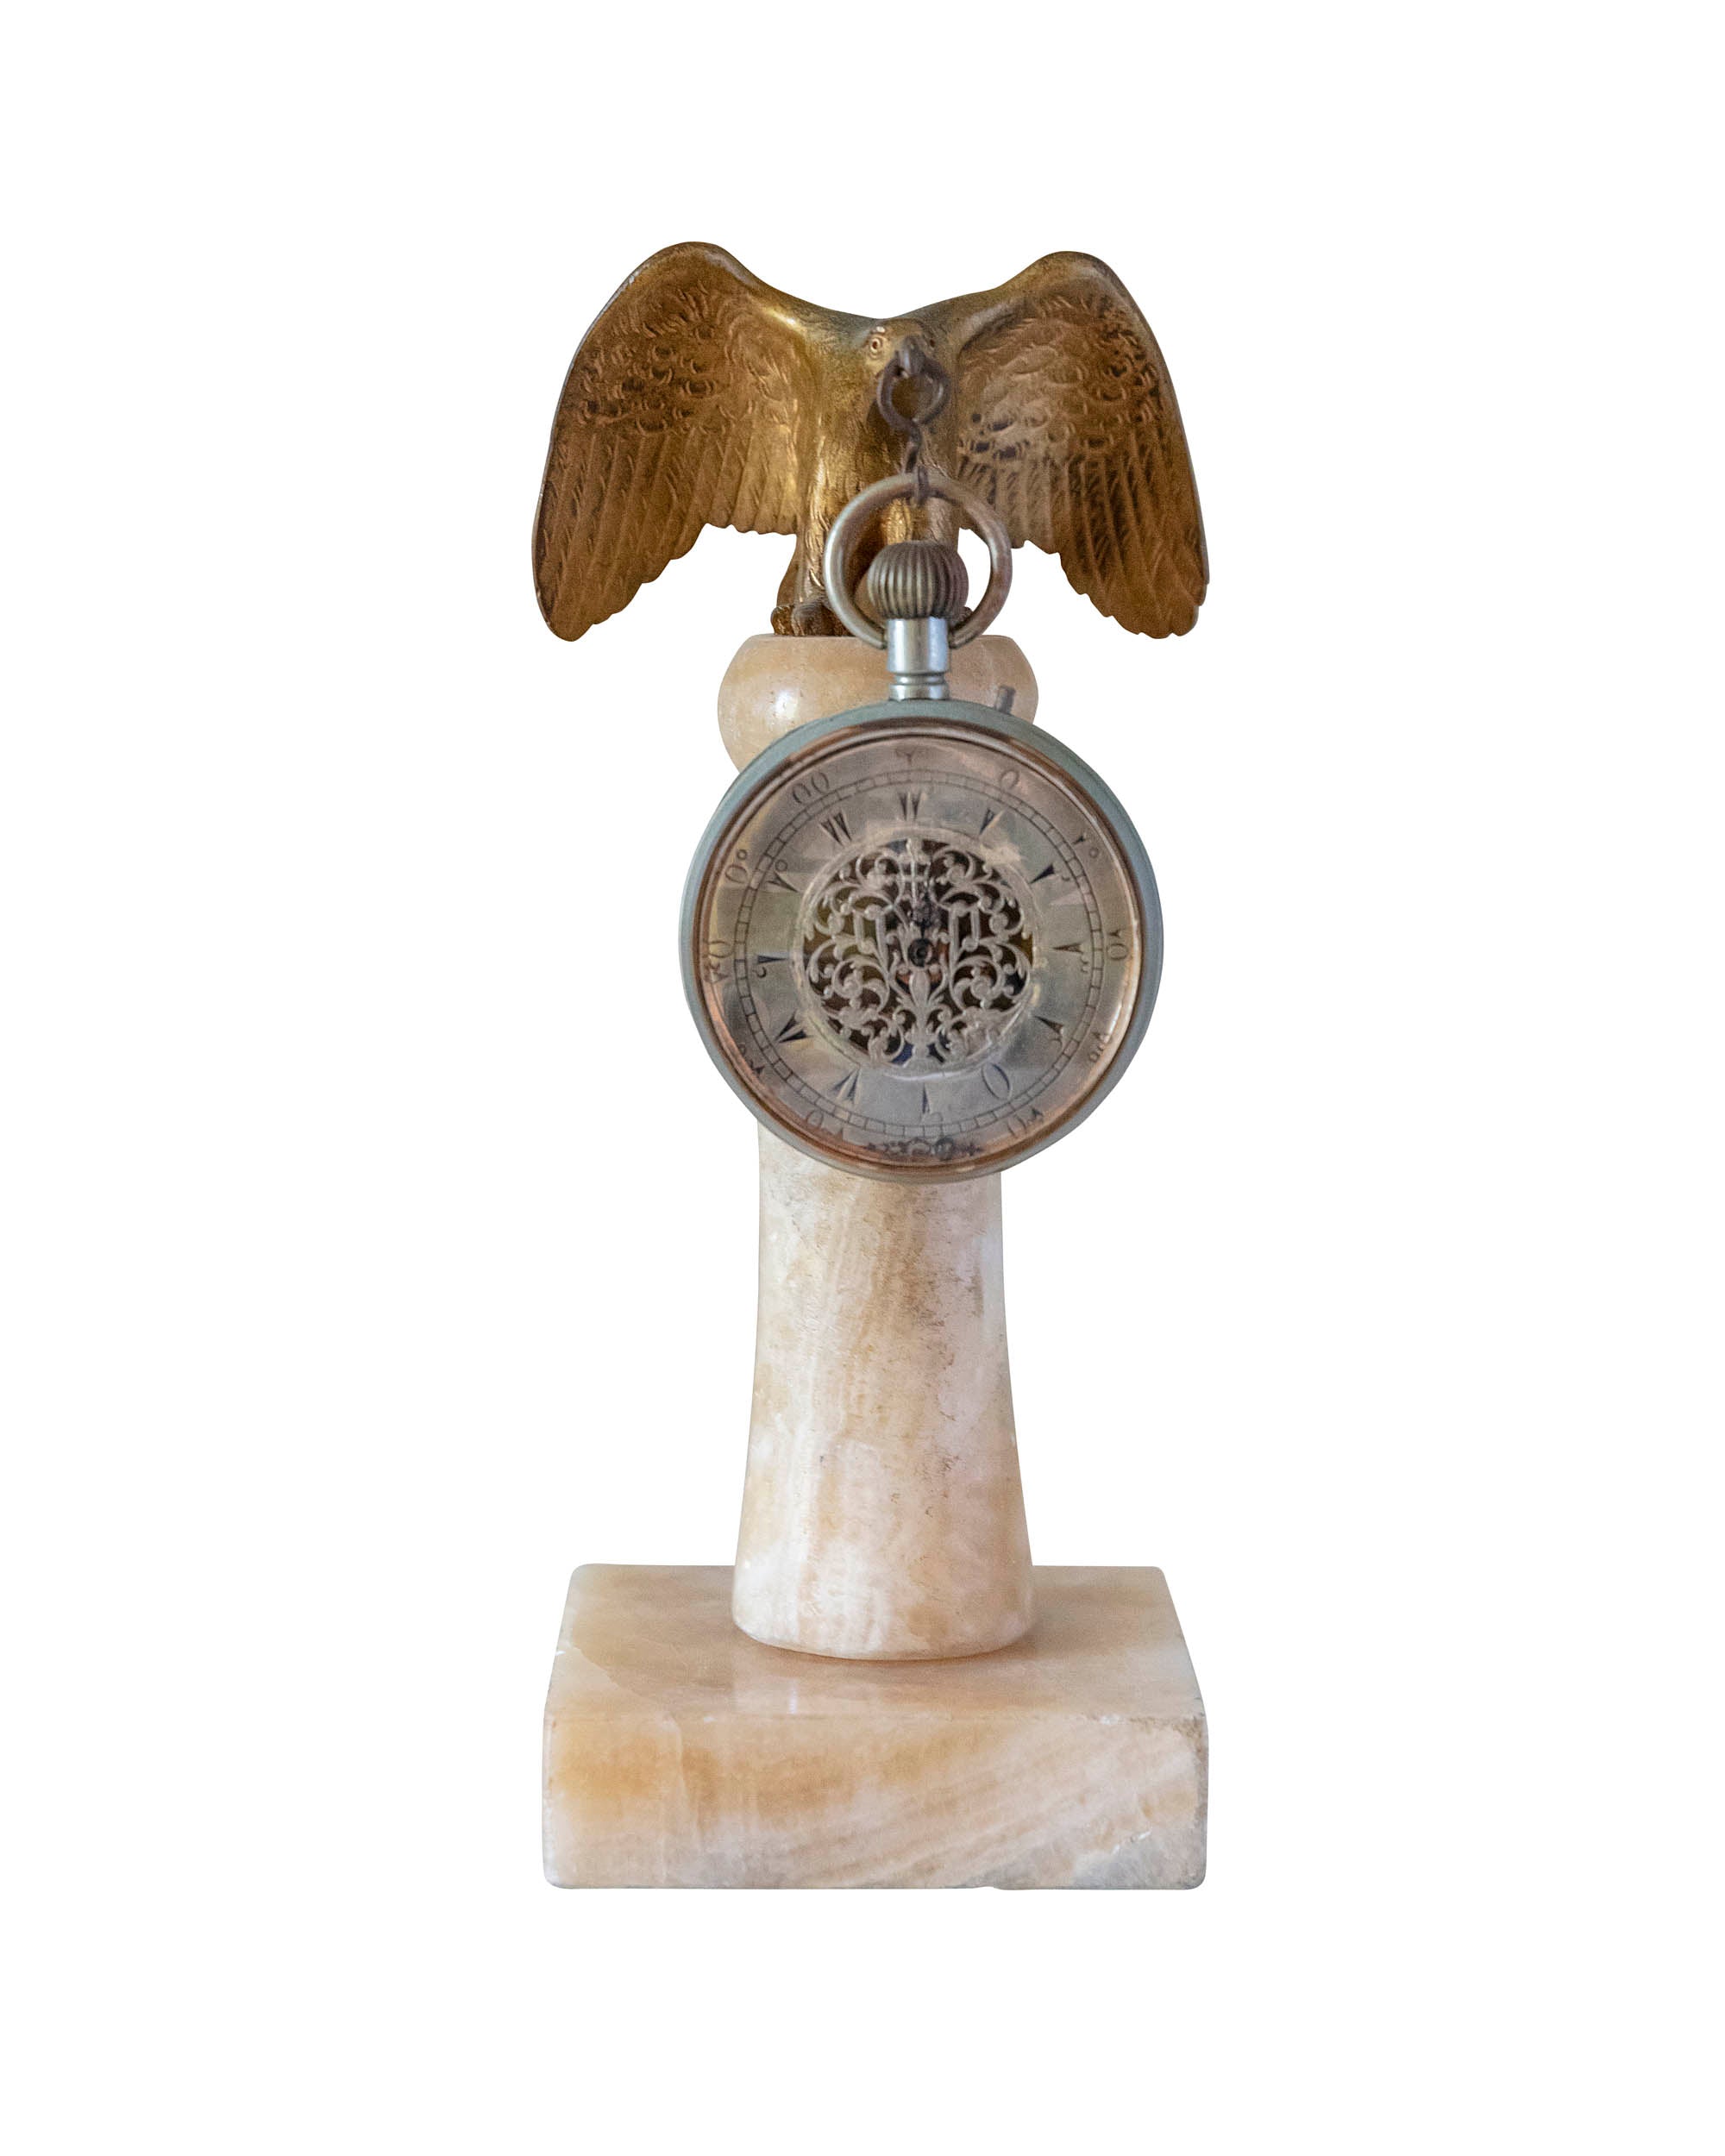 Horloge turque soutenue par un aigle en bronze sur un socle en marbre blanc